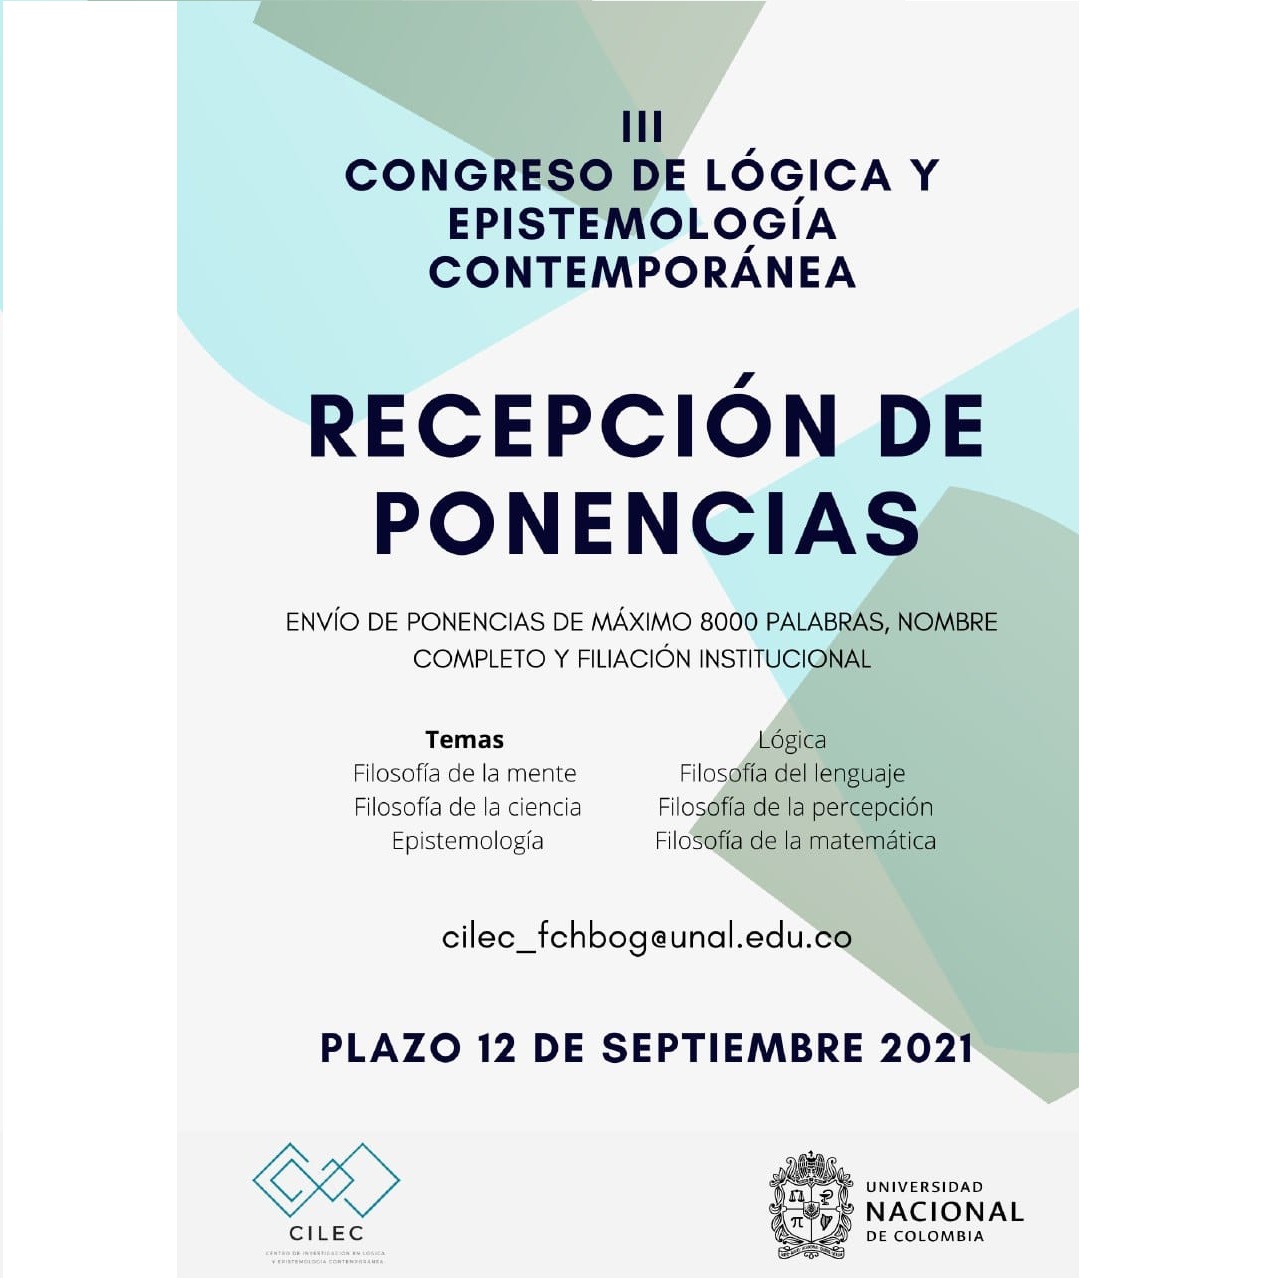 Recepción de ponencias para III Congreso de epistemología y filosofía contemporánea